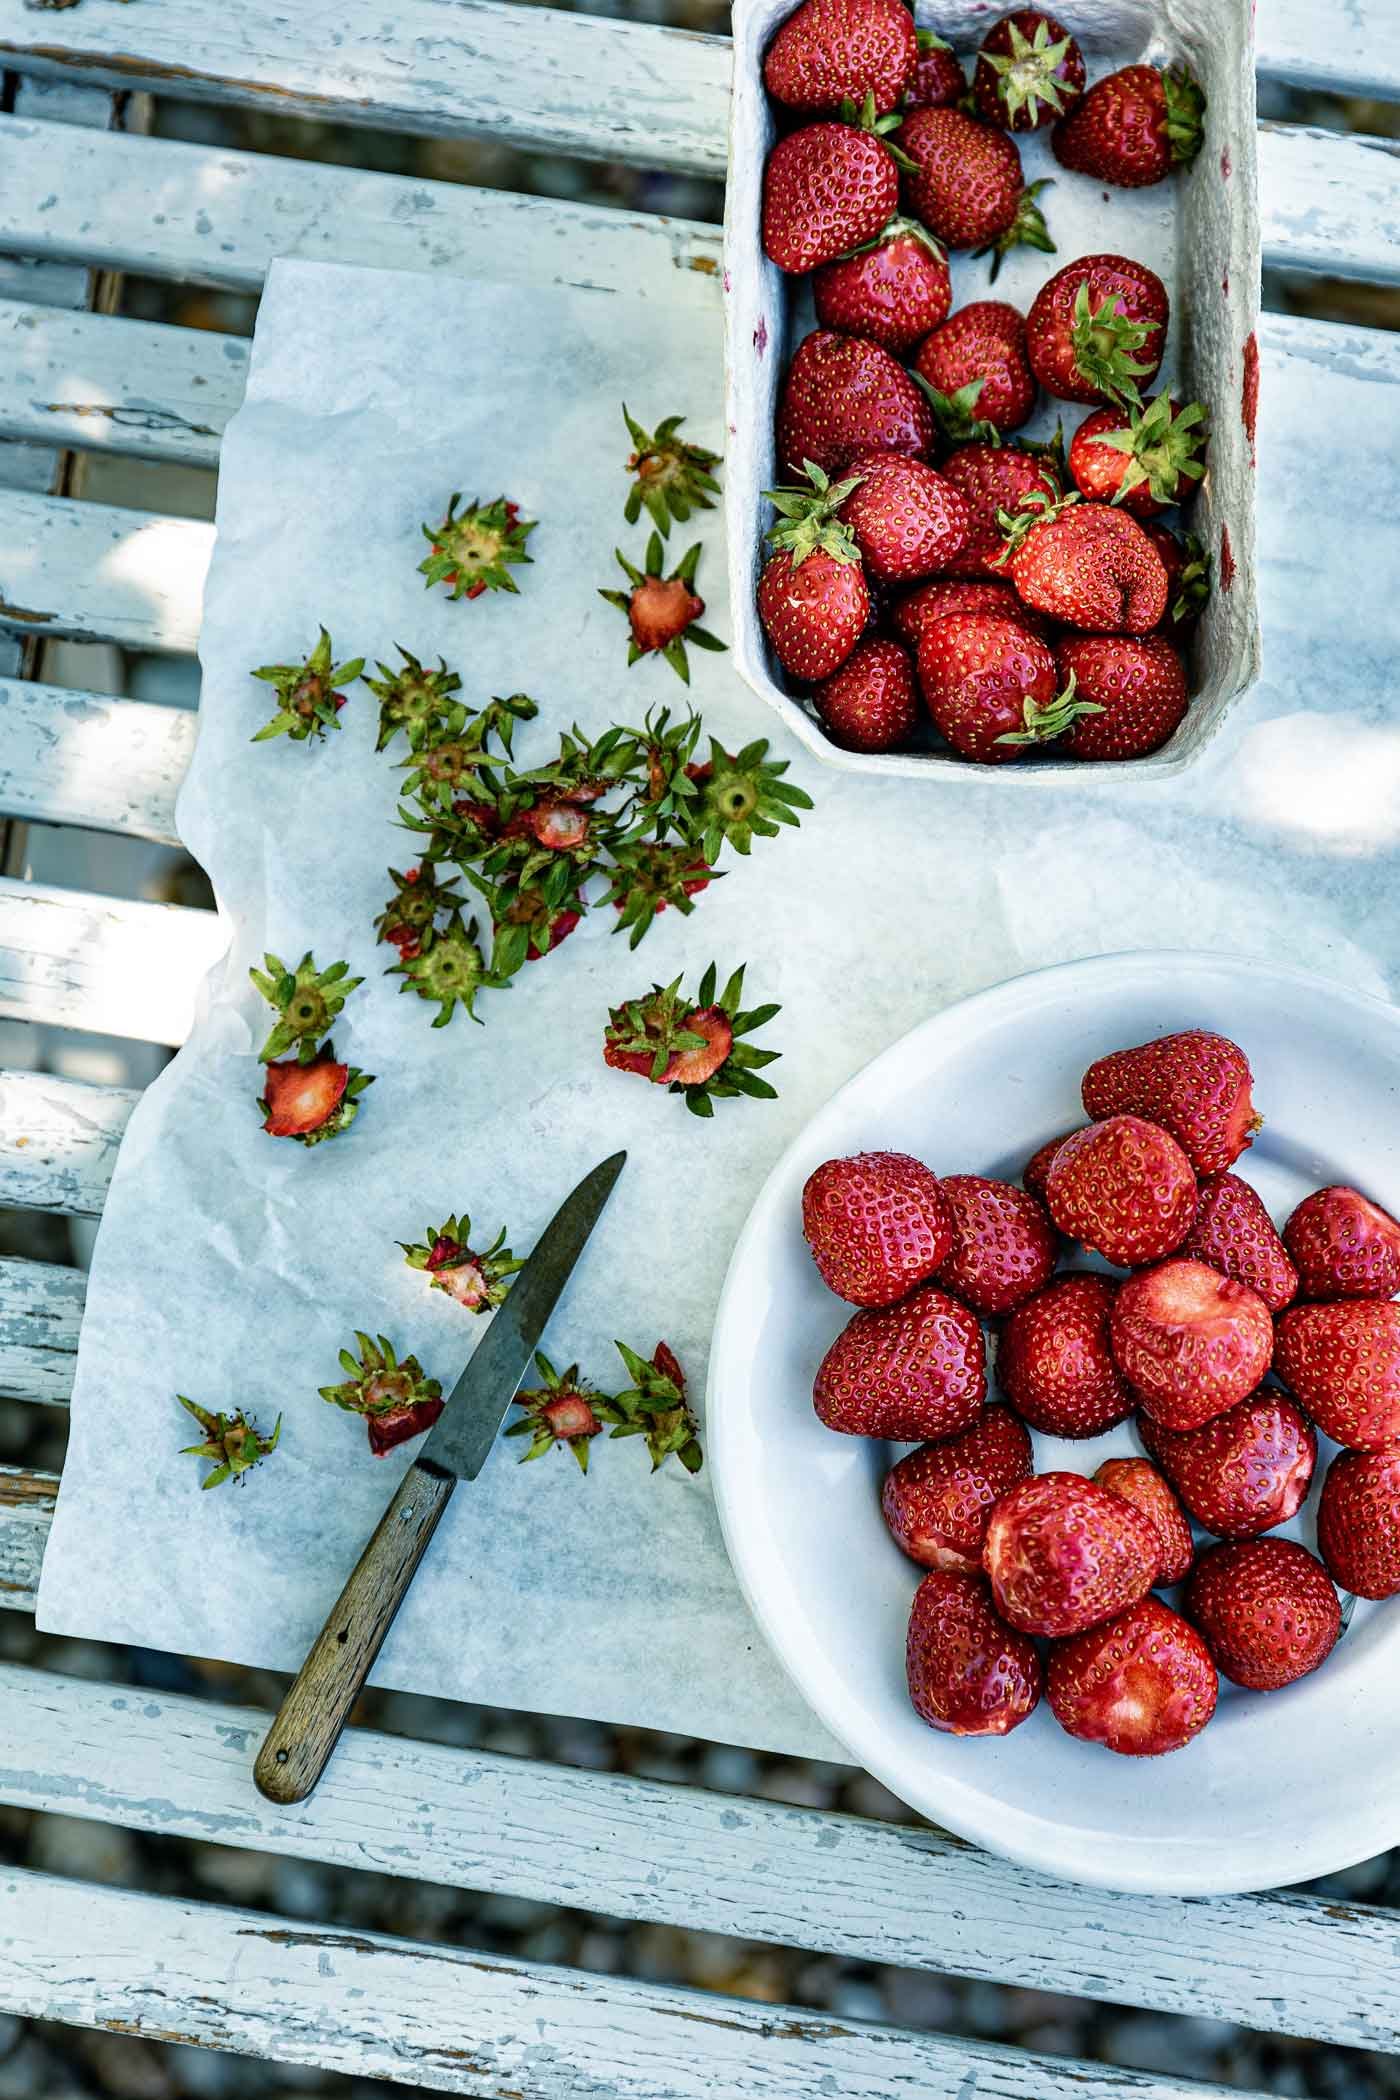 erdbeeren-vorbereiten-stilleben-veggielicious-food-fotografie_016-dt-hoch.jpg